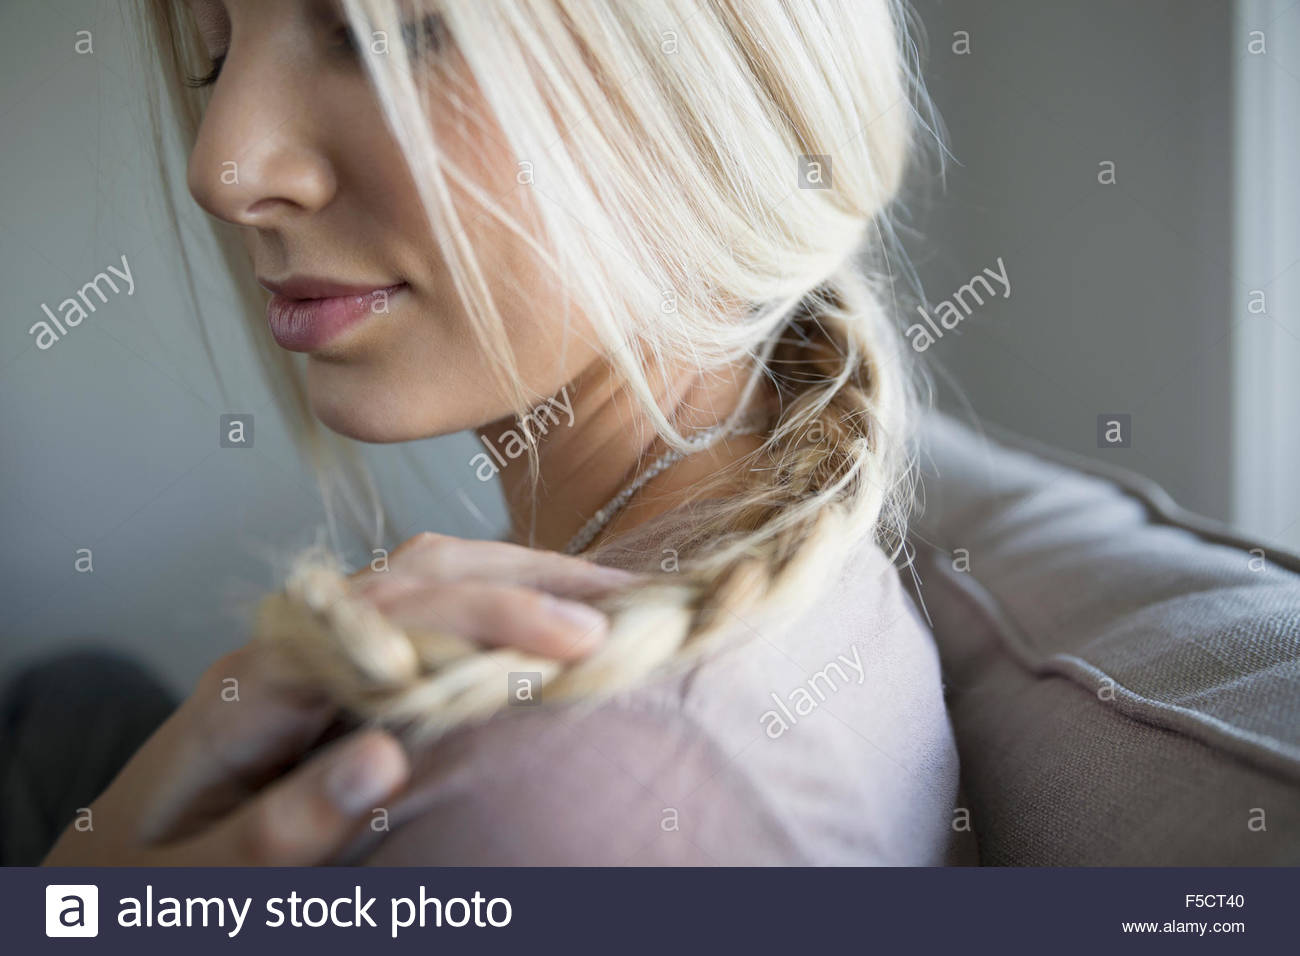 Close up tresse blonde woman Banque D'Images